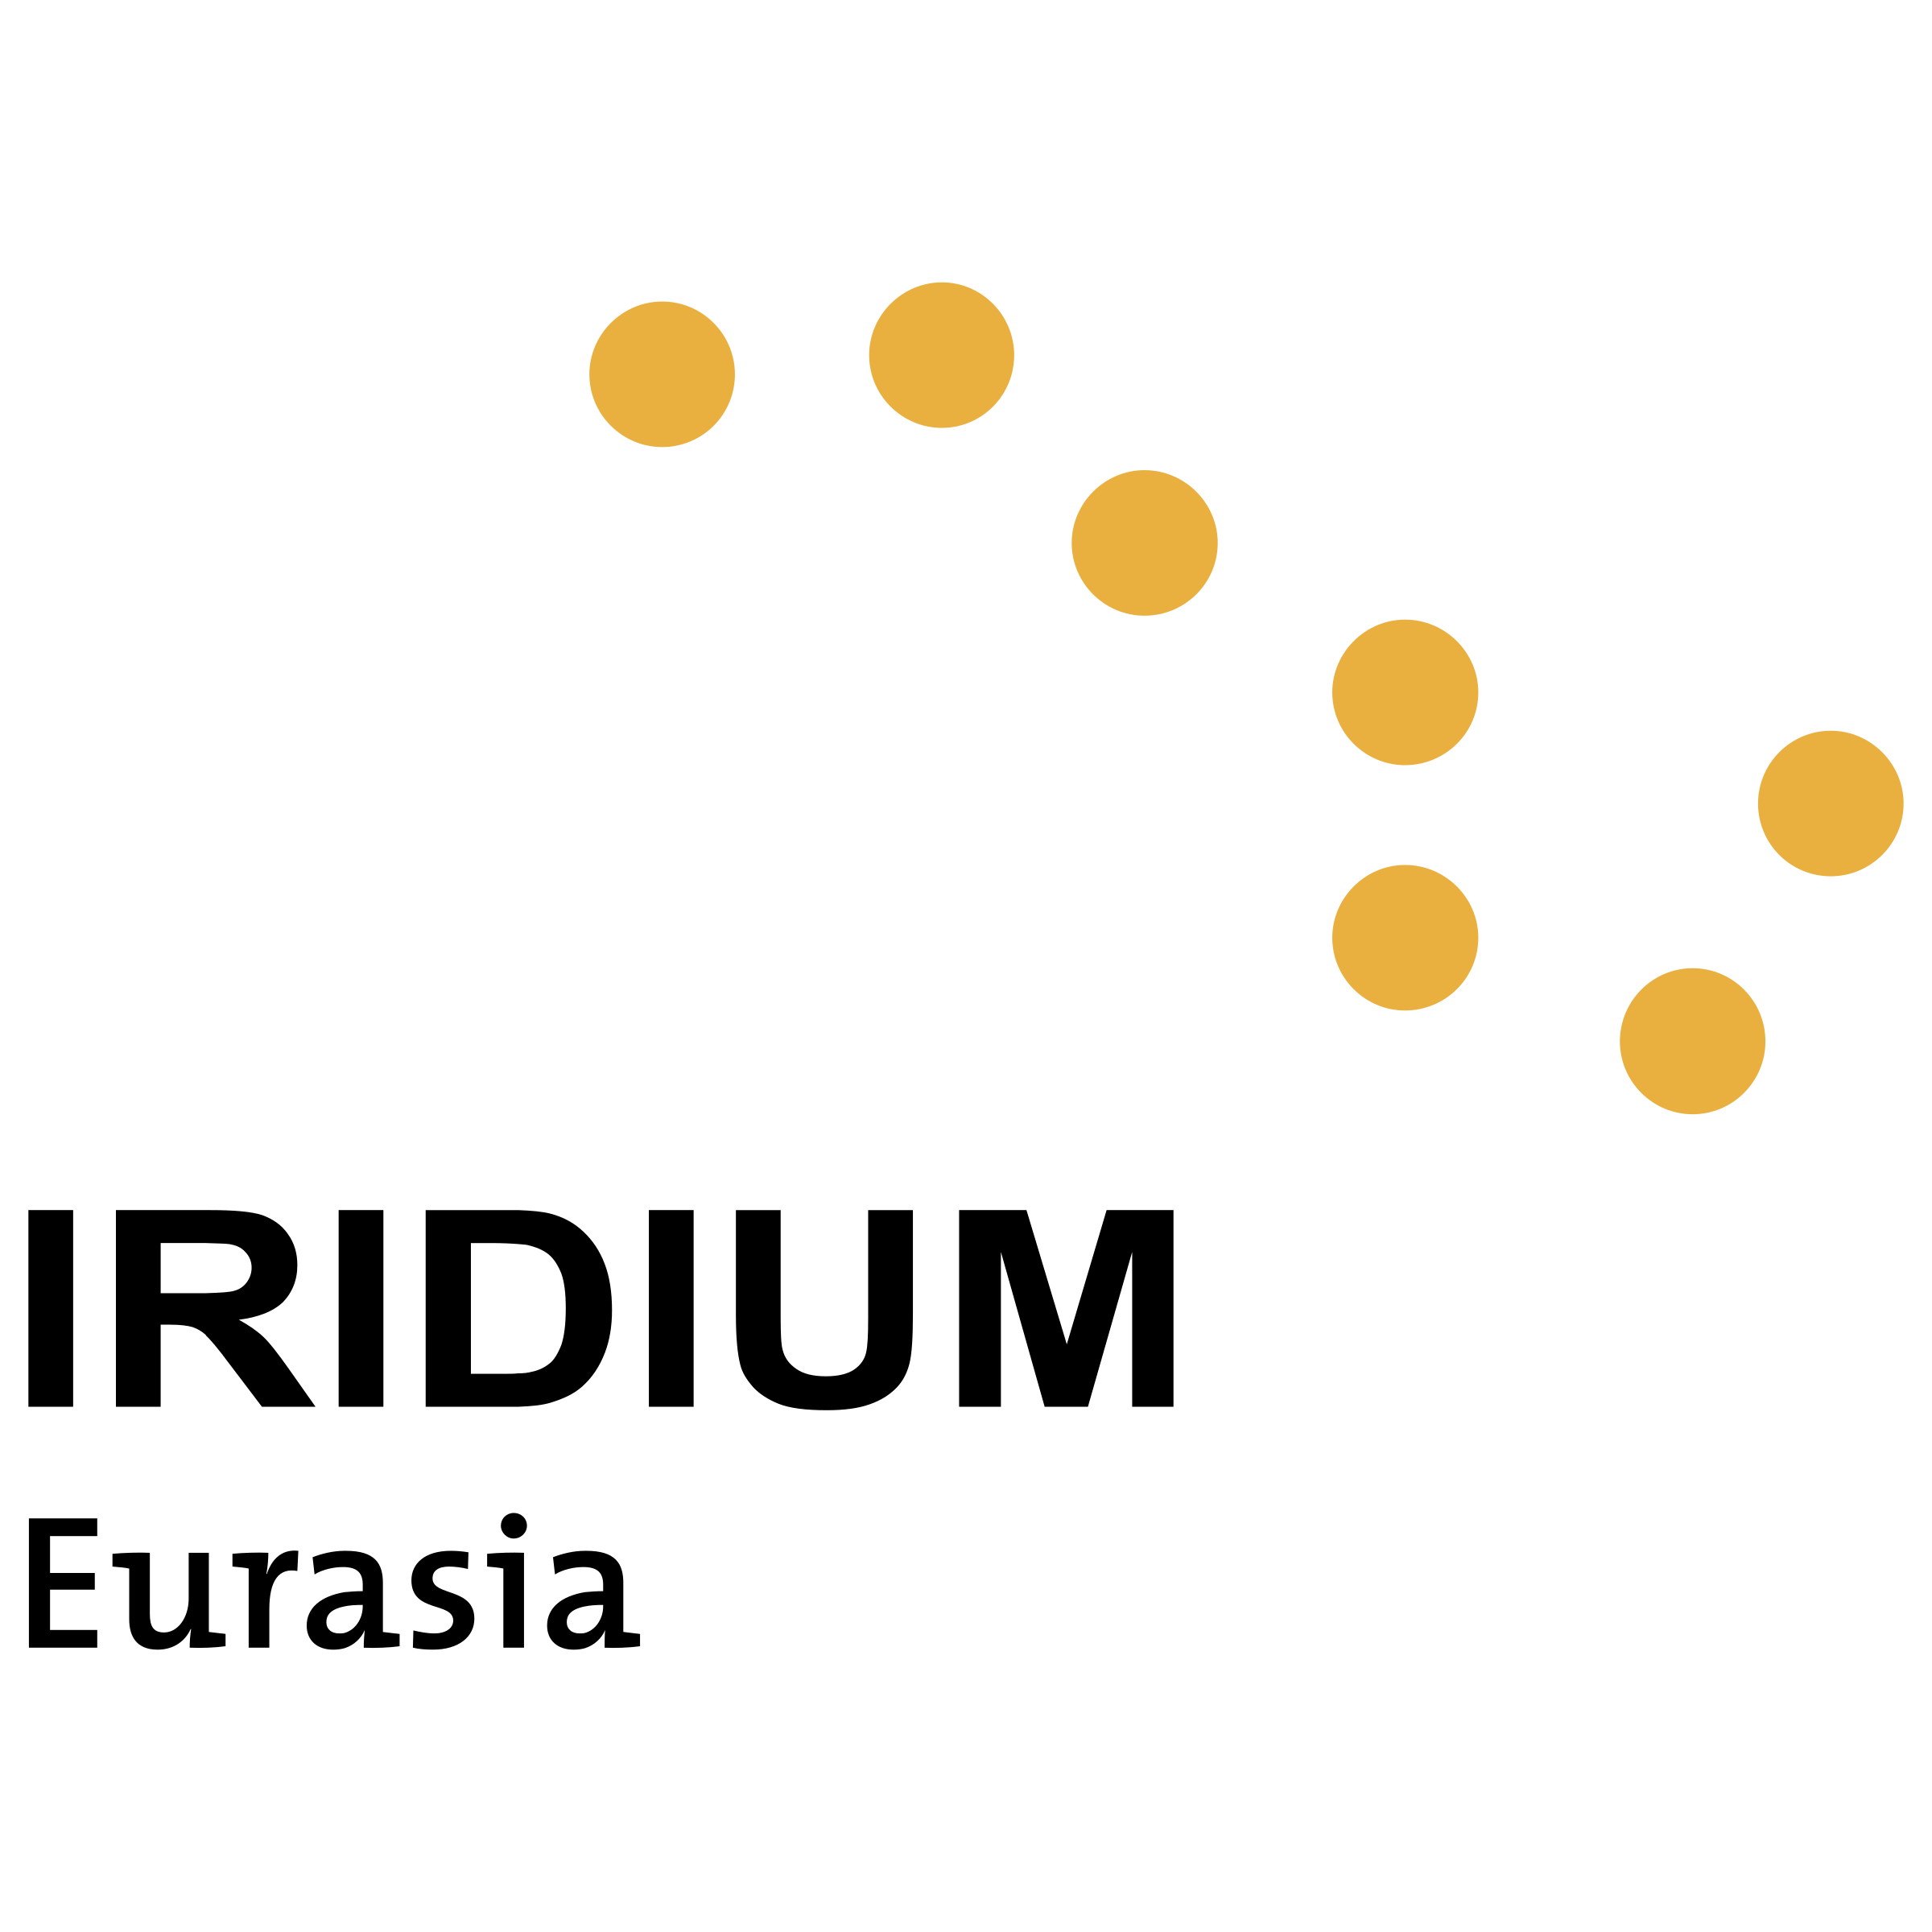 Iridium Logo - Iridium Eurasia Logo PNG Transparent & SVG Vector